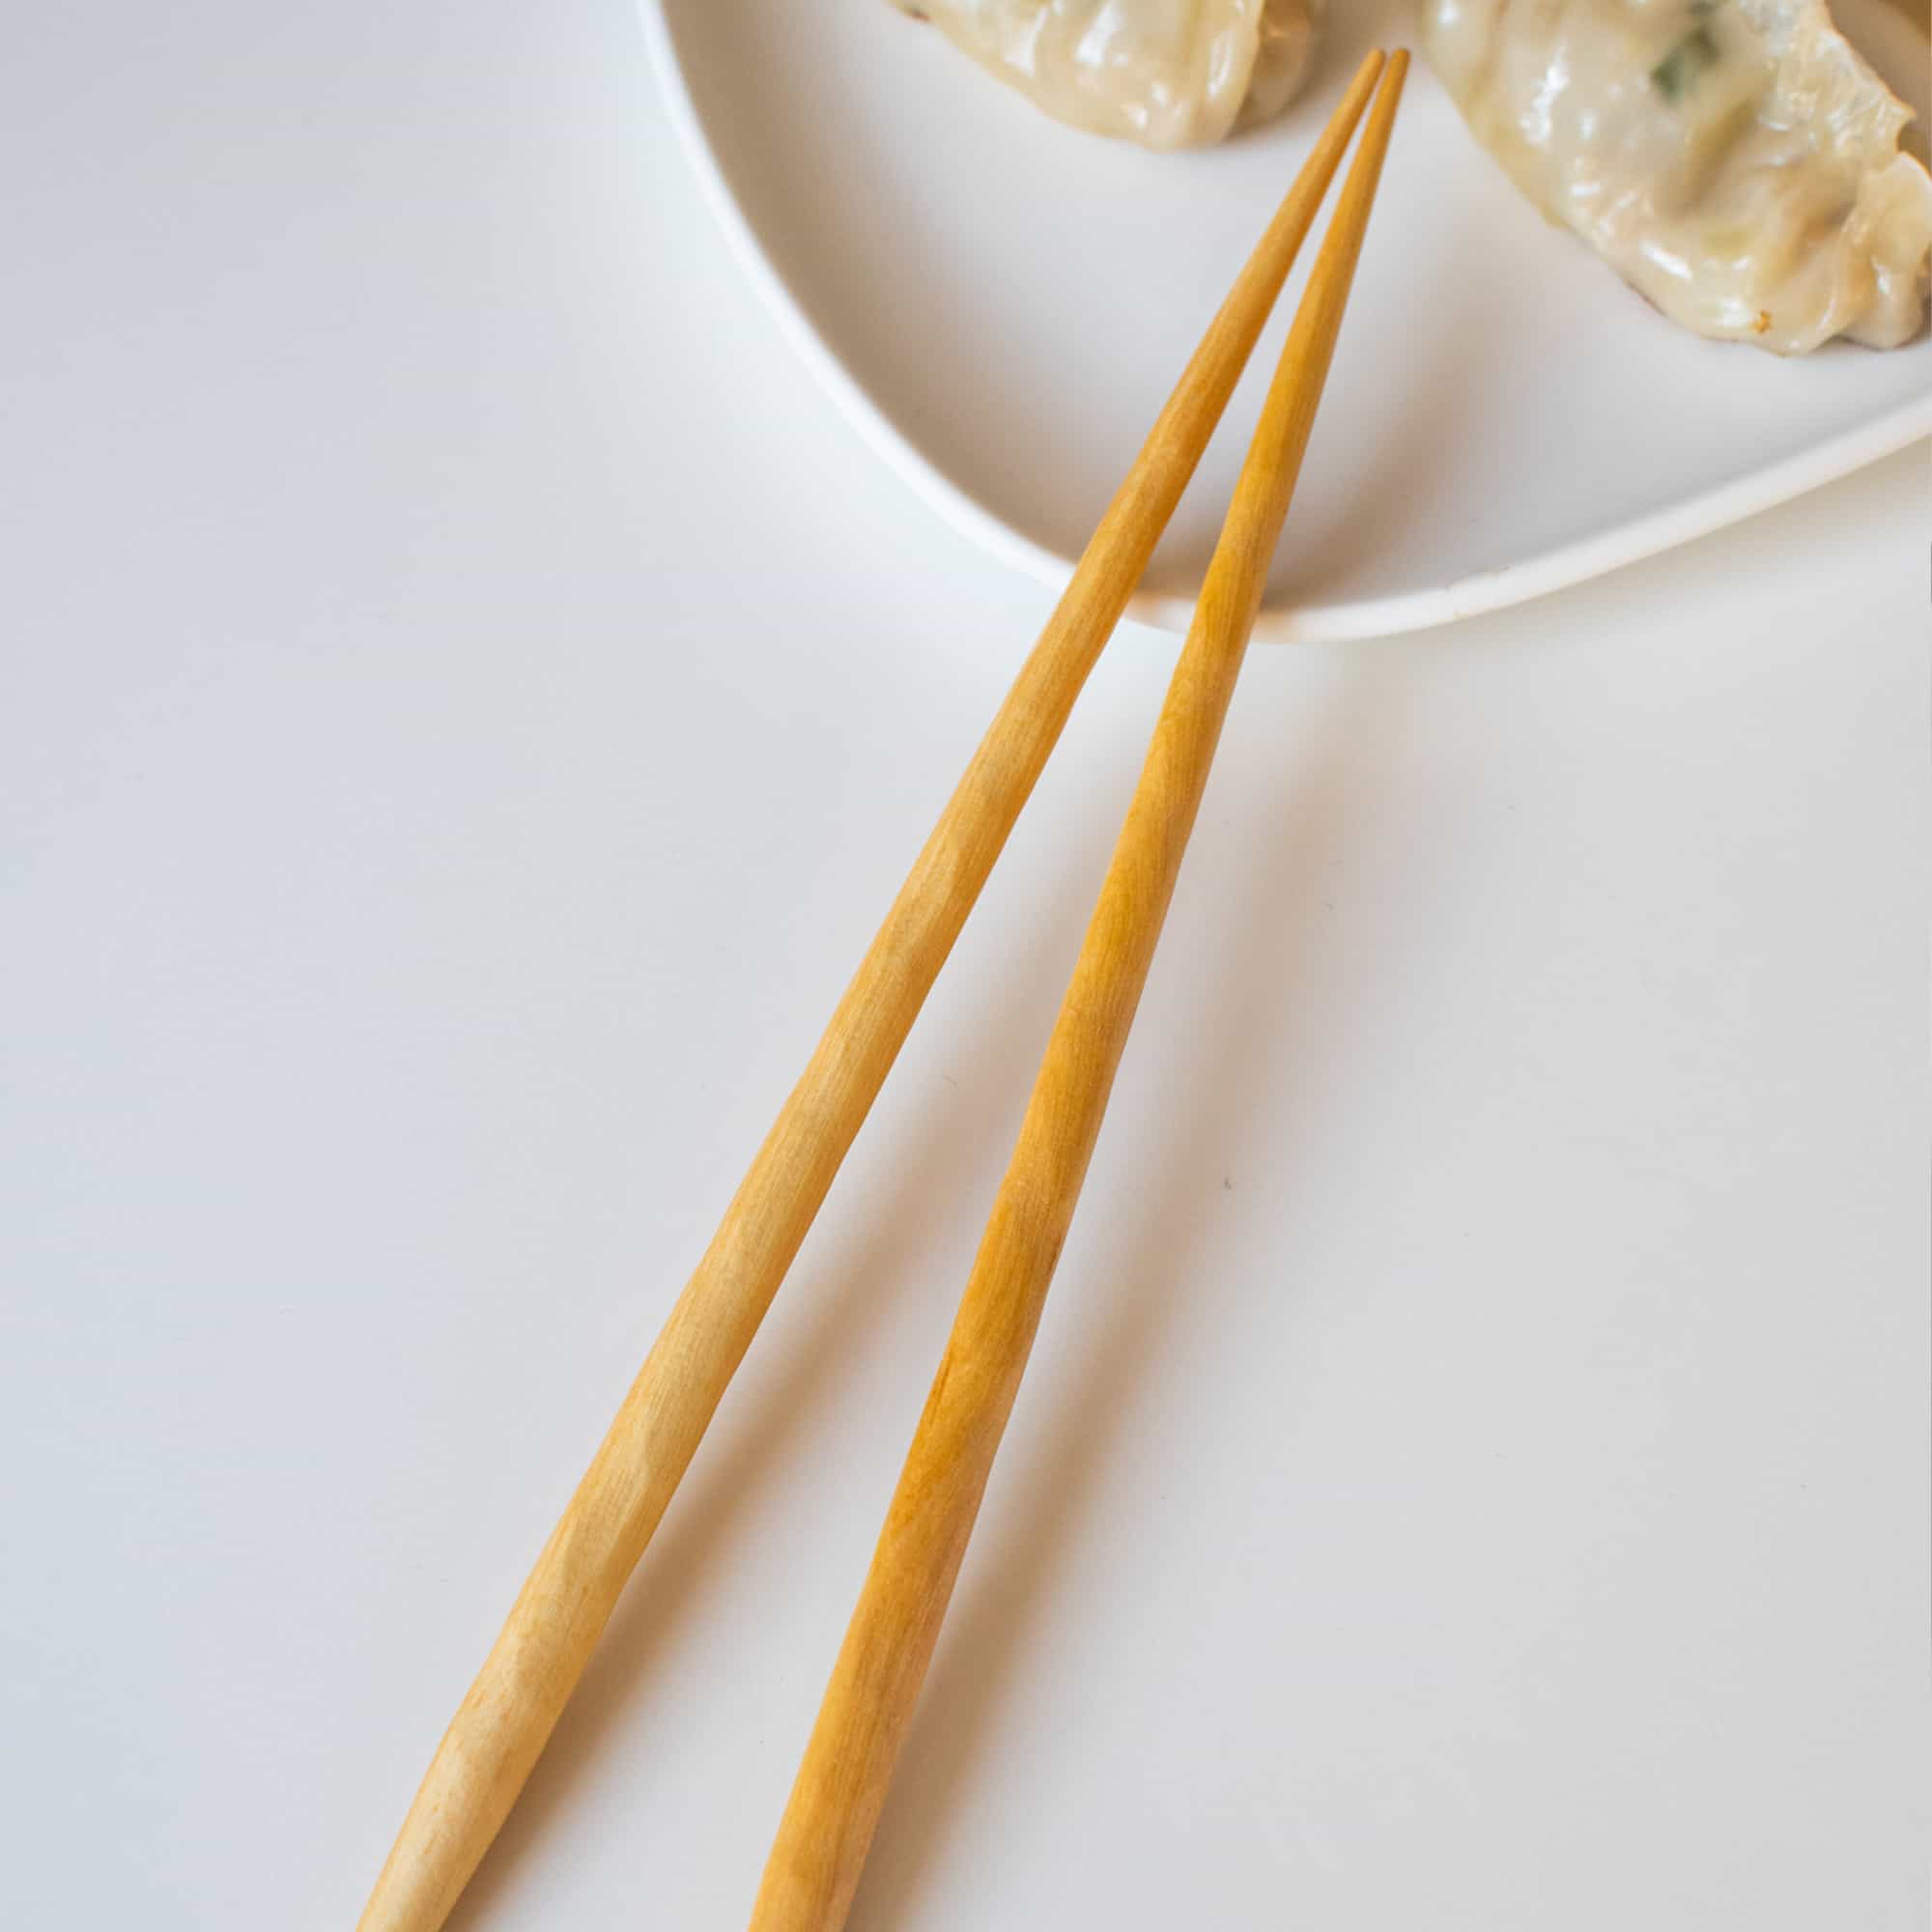 Kawai Carved Wood Chopsticks - Set of 5